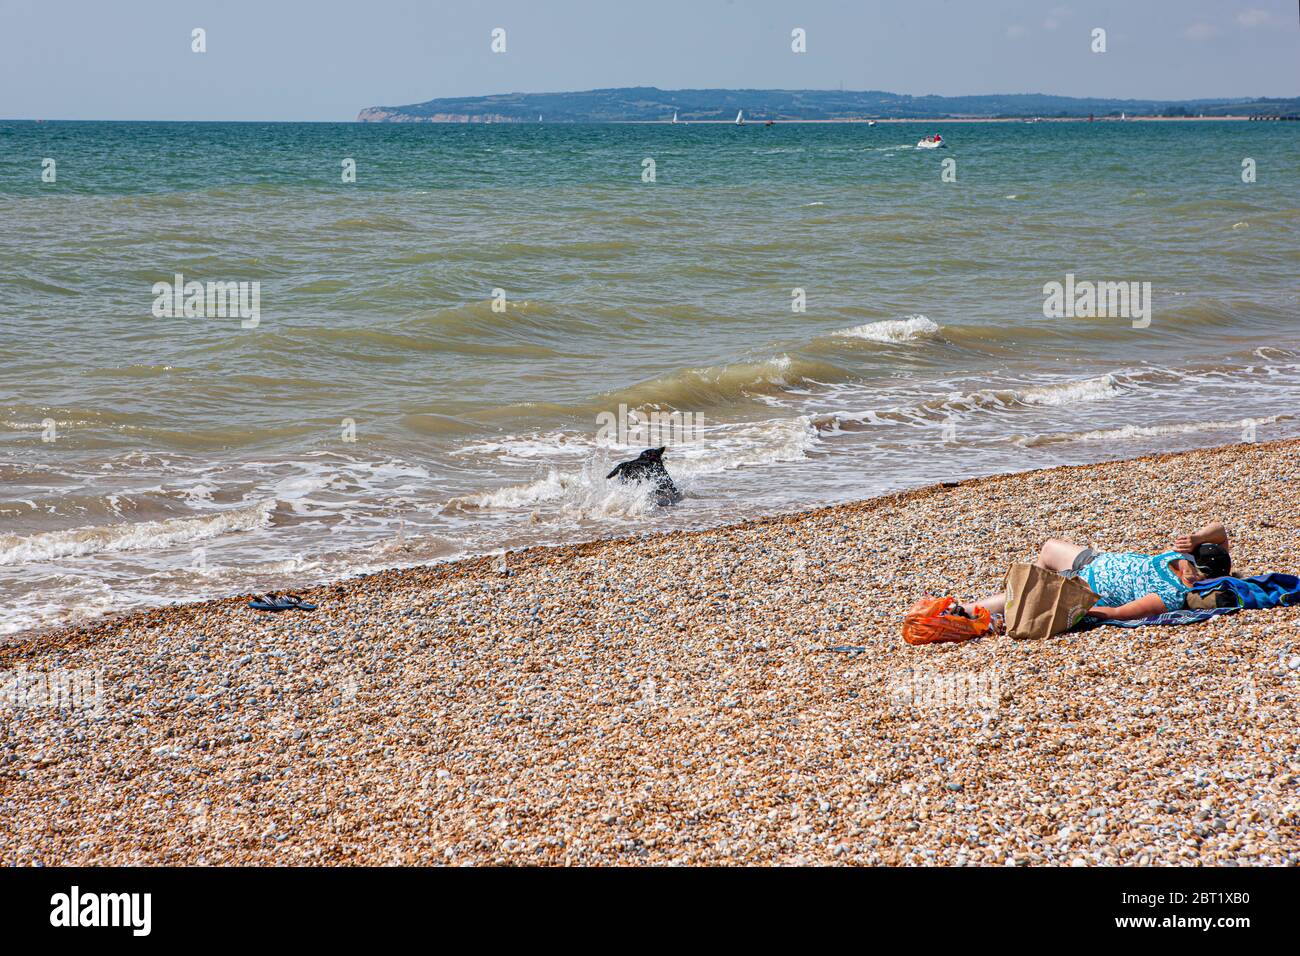 Una donna prende il sole su una spiaggia di ciottoli a Camber Sands, East Sussex, UK, in una calda giornata estiva mentre il suo cane spruzzi in mare. Foto Stock